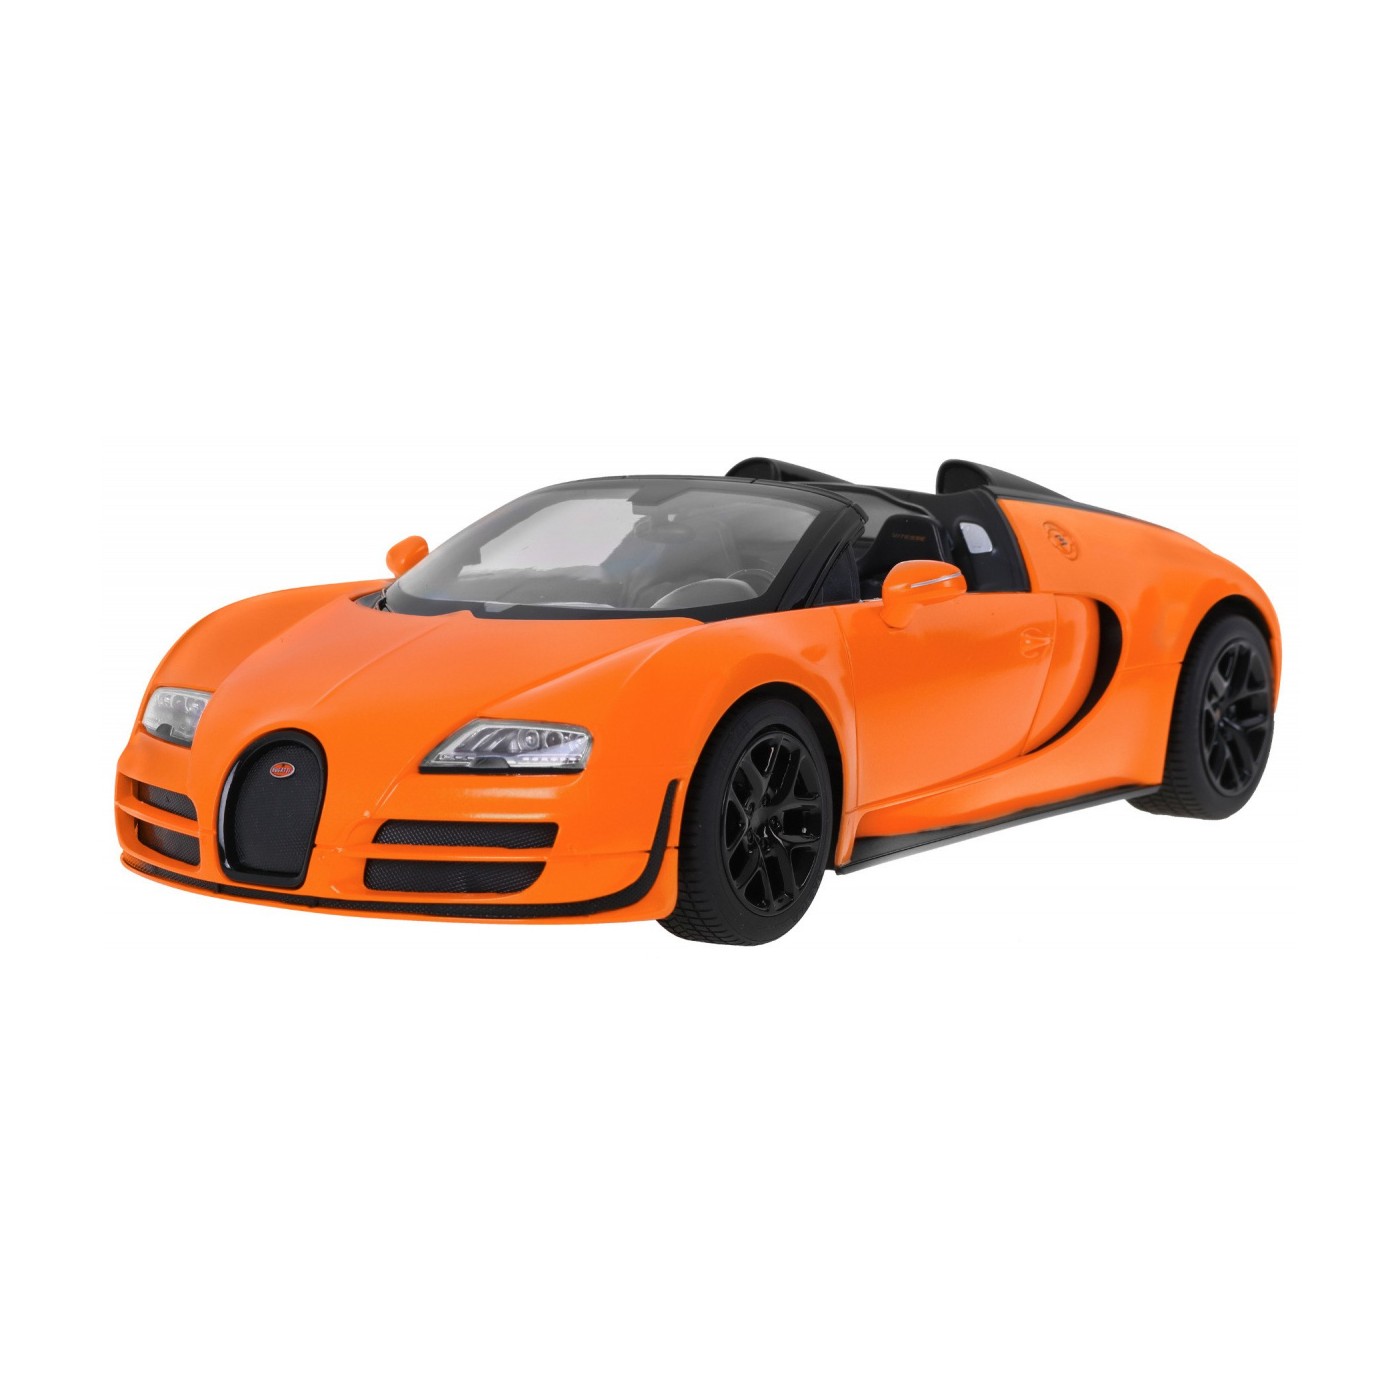 Autko R/C Bugatti Veyron Grand Sport Pomarańcz 1:14 RASTAR